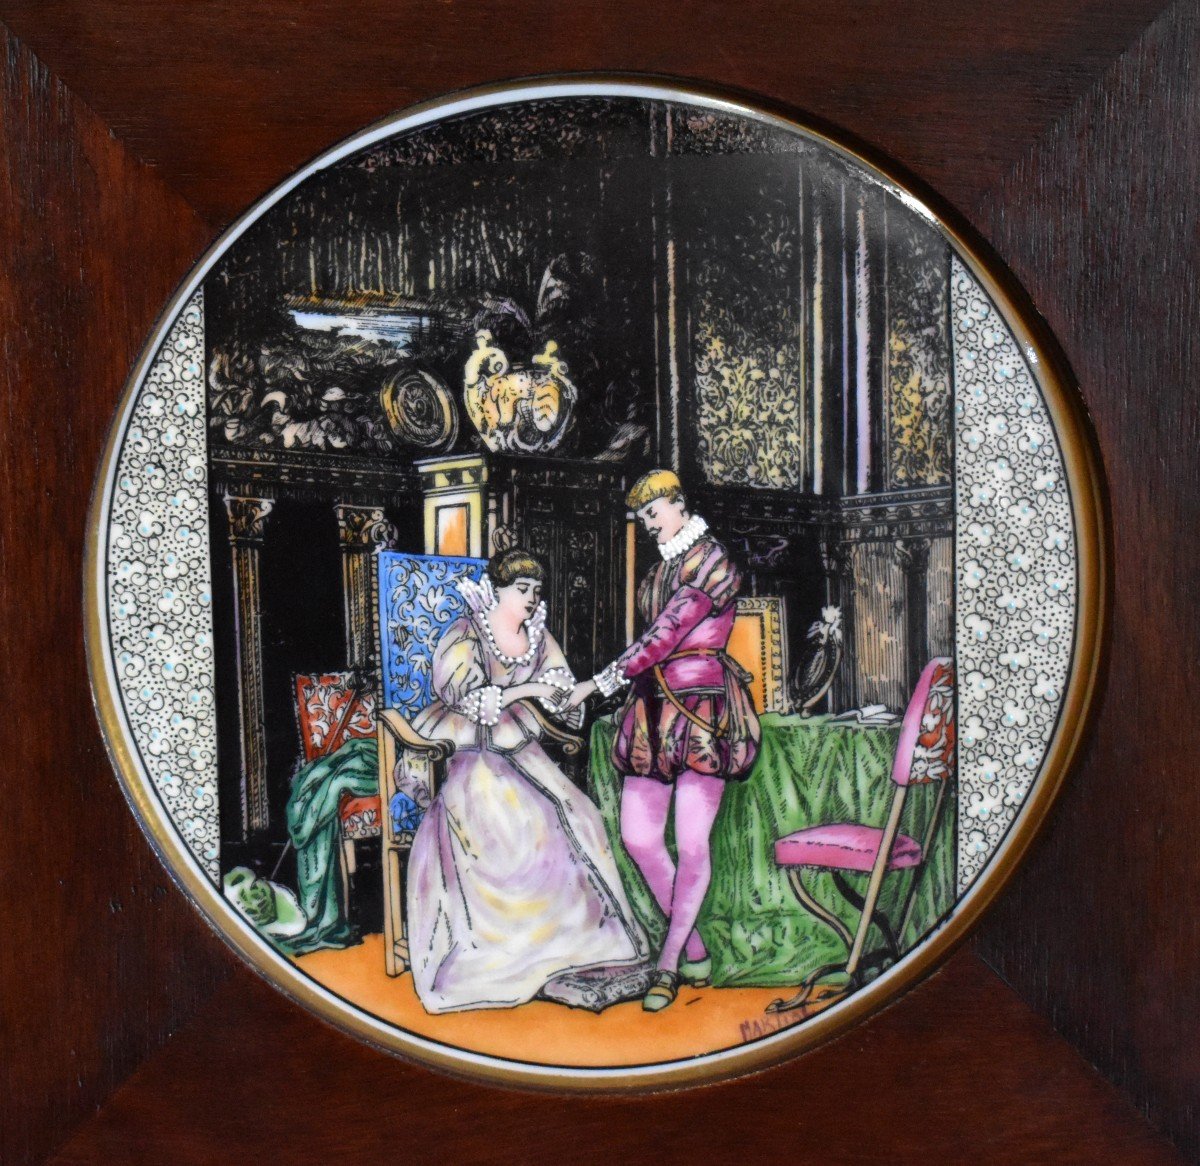 Limoges Porcelain Decorative Plate Signed Martial, Gallant Scene, Renaissance Decor,